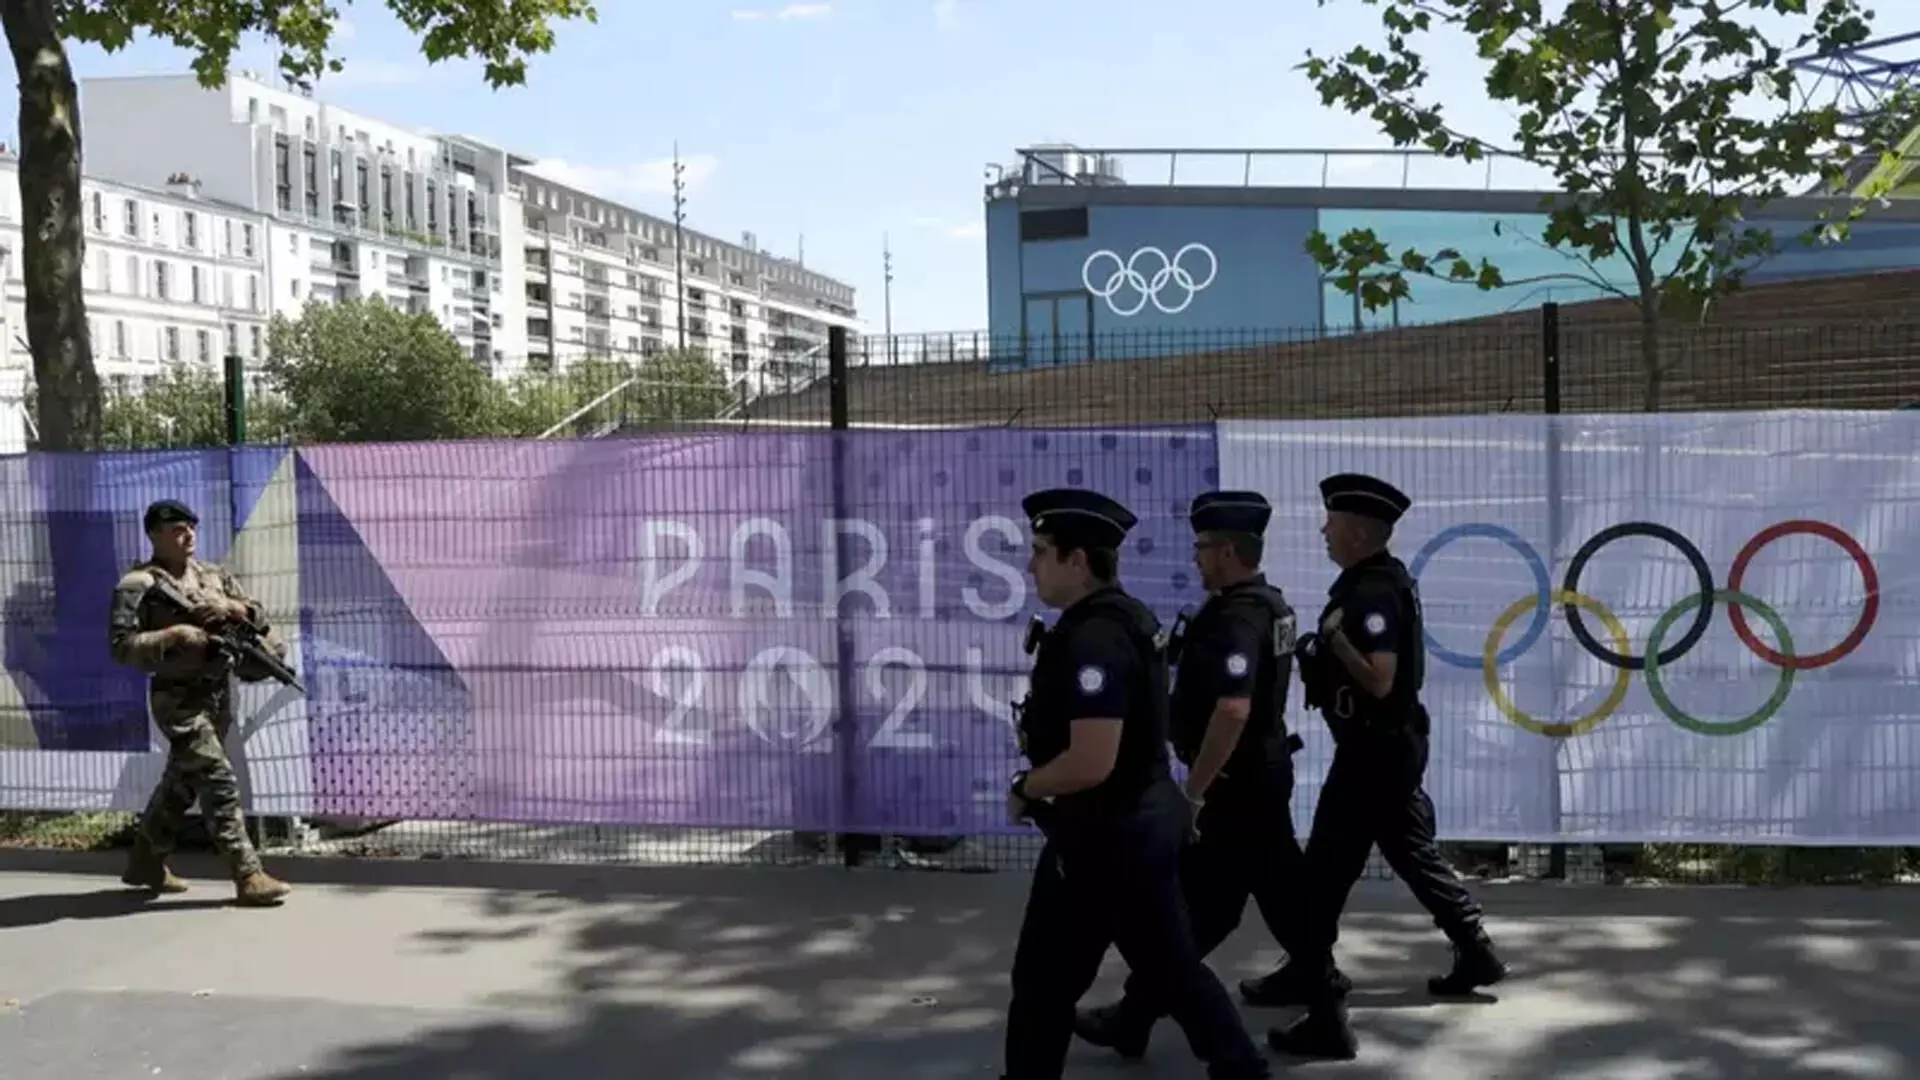 Olympic उद्घाटन समारोह से पहले पेरिस पुलिस सीन नदी को कर रही है सील